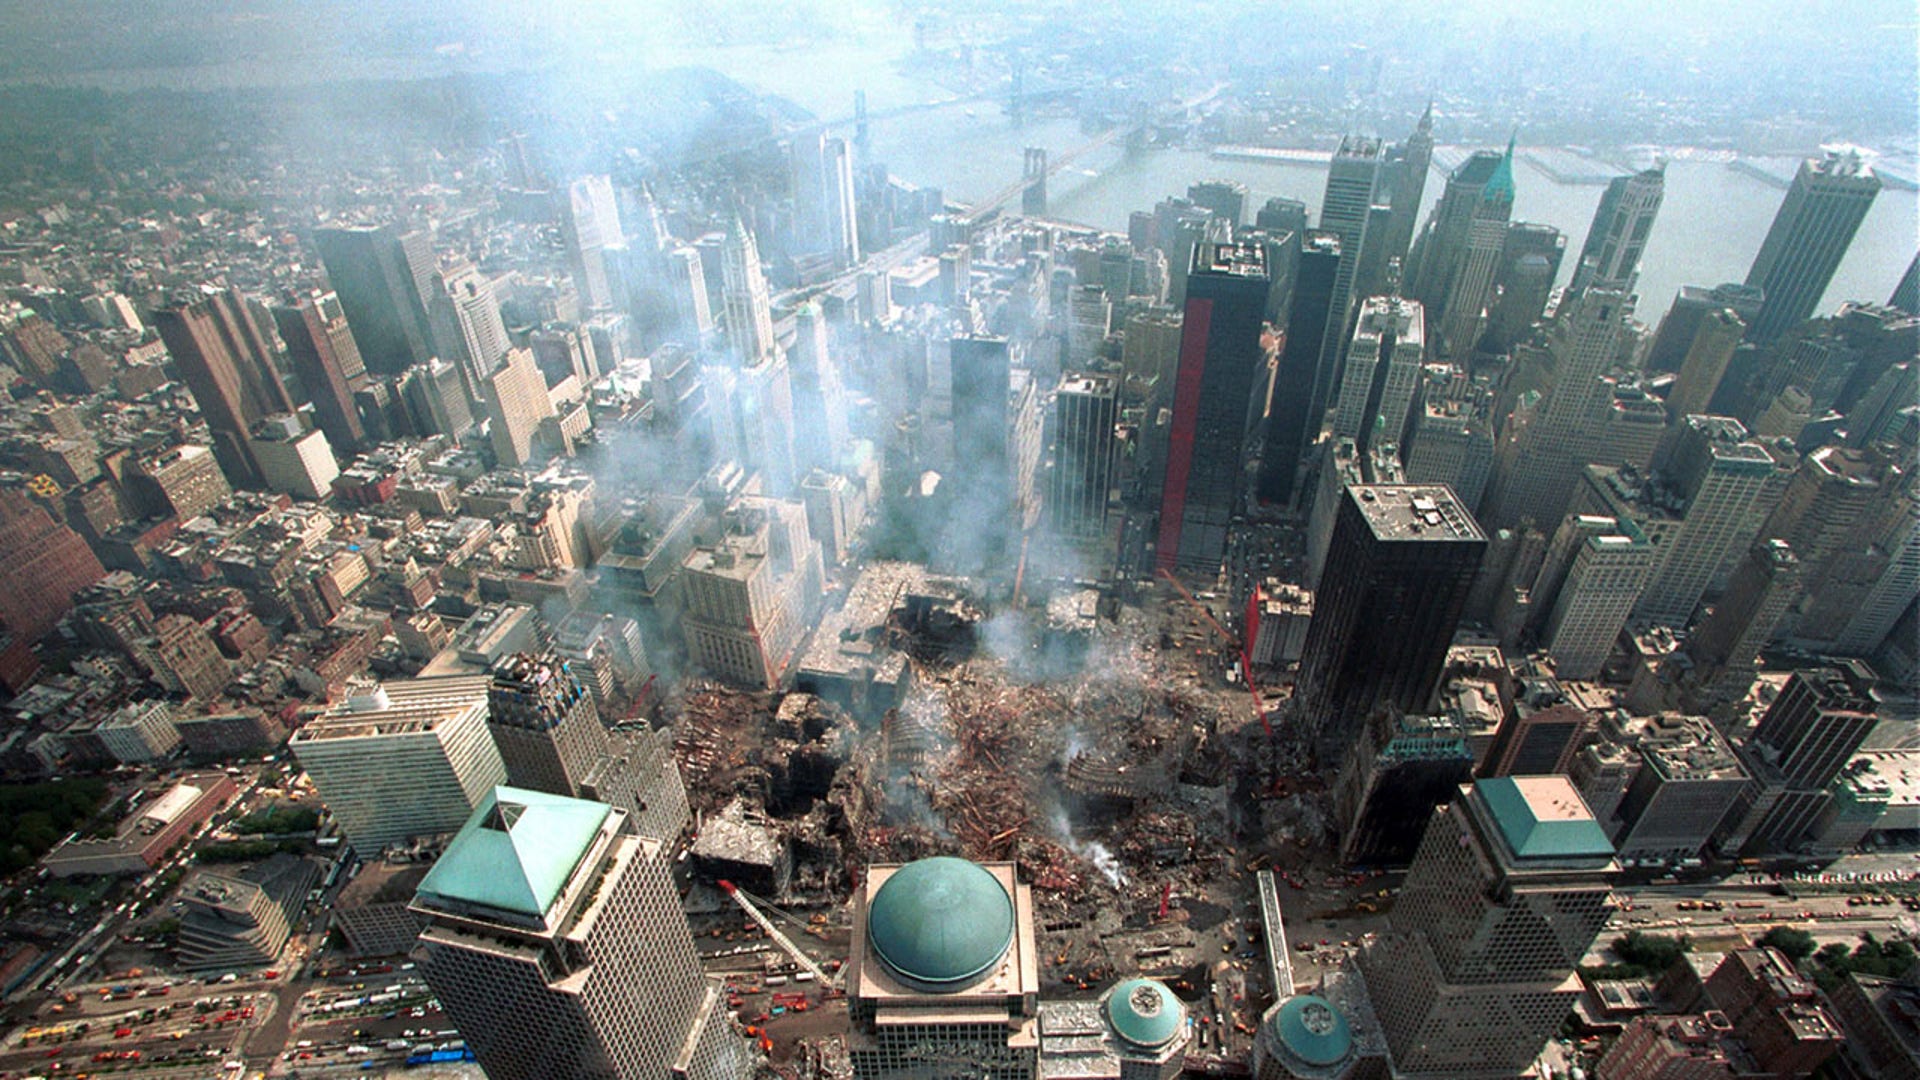 Небоскребы 2001. WTC В Нью Йорке 11 2001. Всемирный торговый центр башни Близнецы. Всемирный торговый центр в Нью-Йорке 11 сентября. WTC ground Zero 9/11.